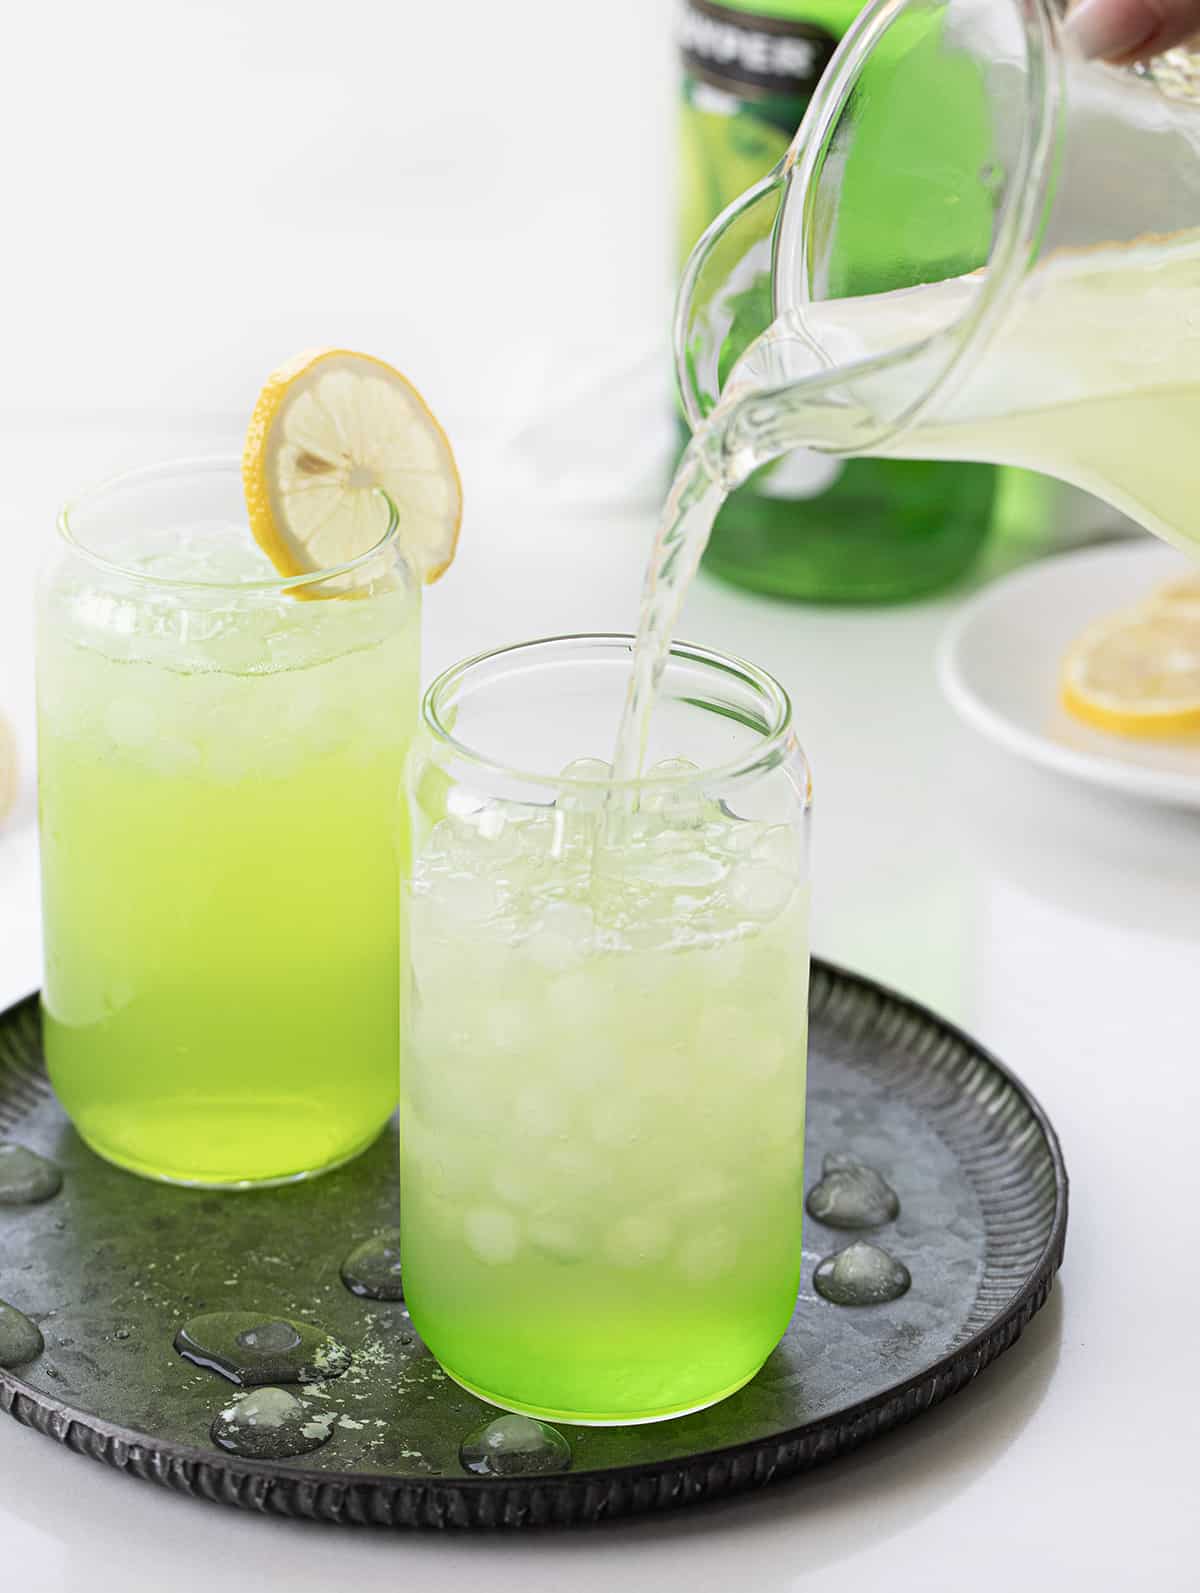 Adding Lemonade to Glass to Make Hulk Smash Cocktail.